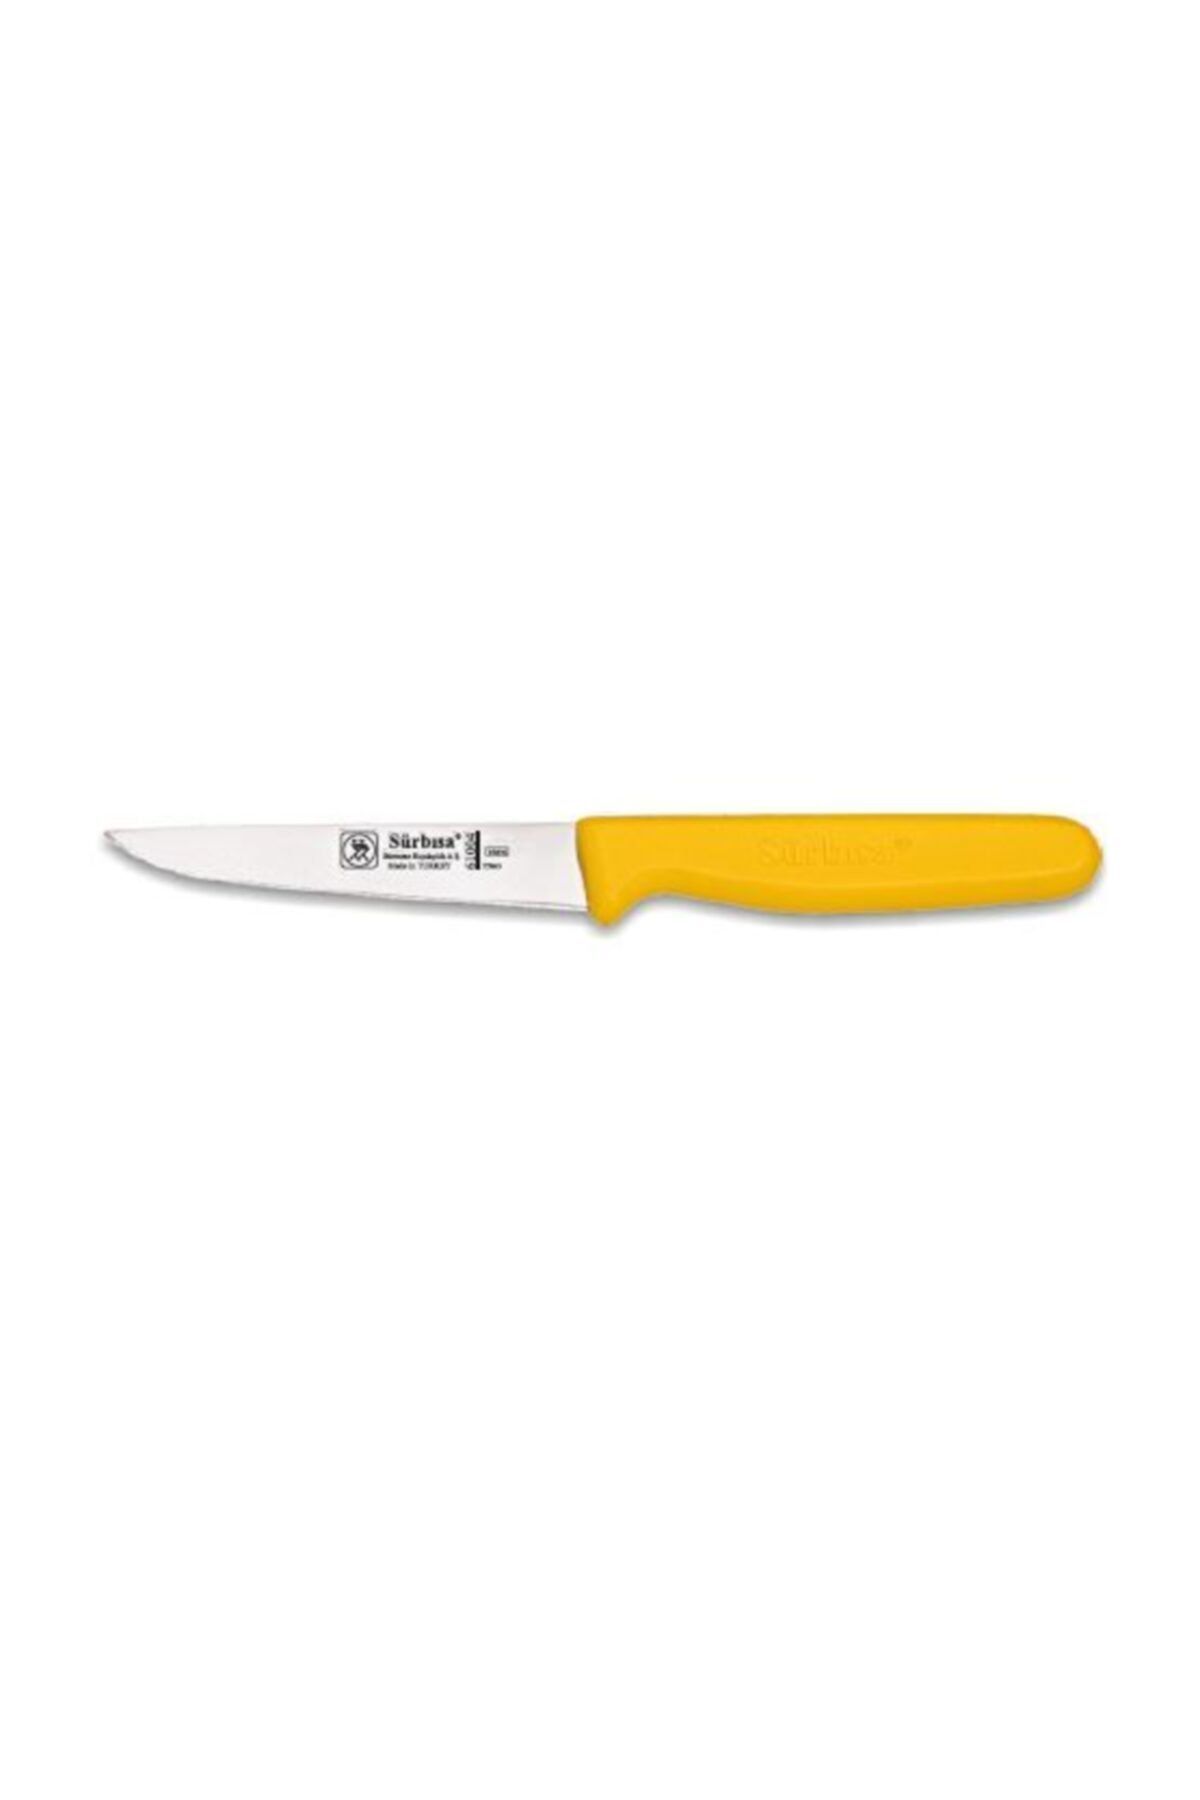 Sürbisa Sürbısa Sebze Bıçağı, 9,5 Cm Sap Hariç, Sarı, 61004